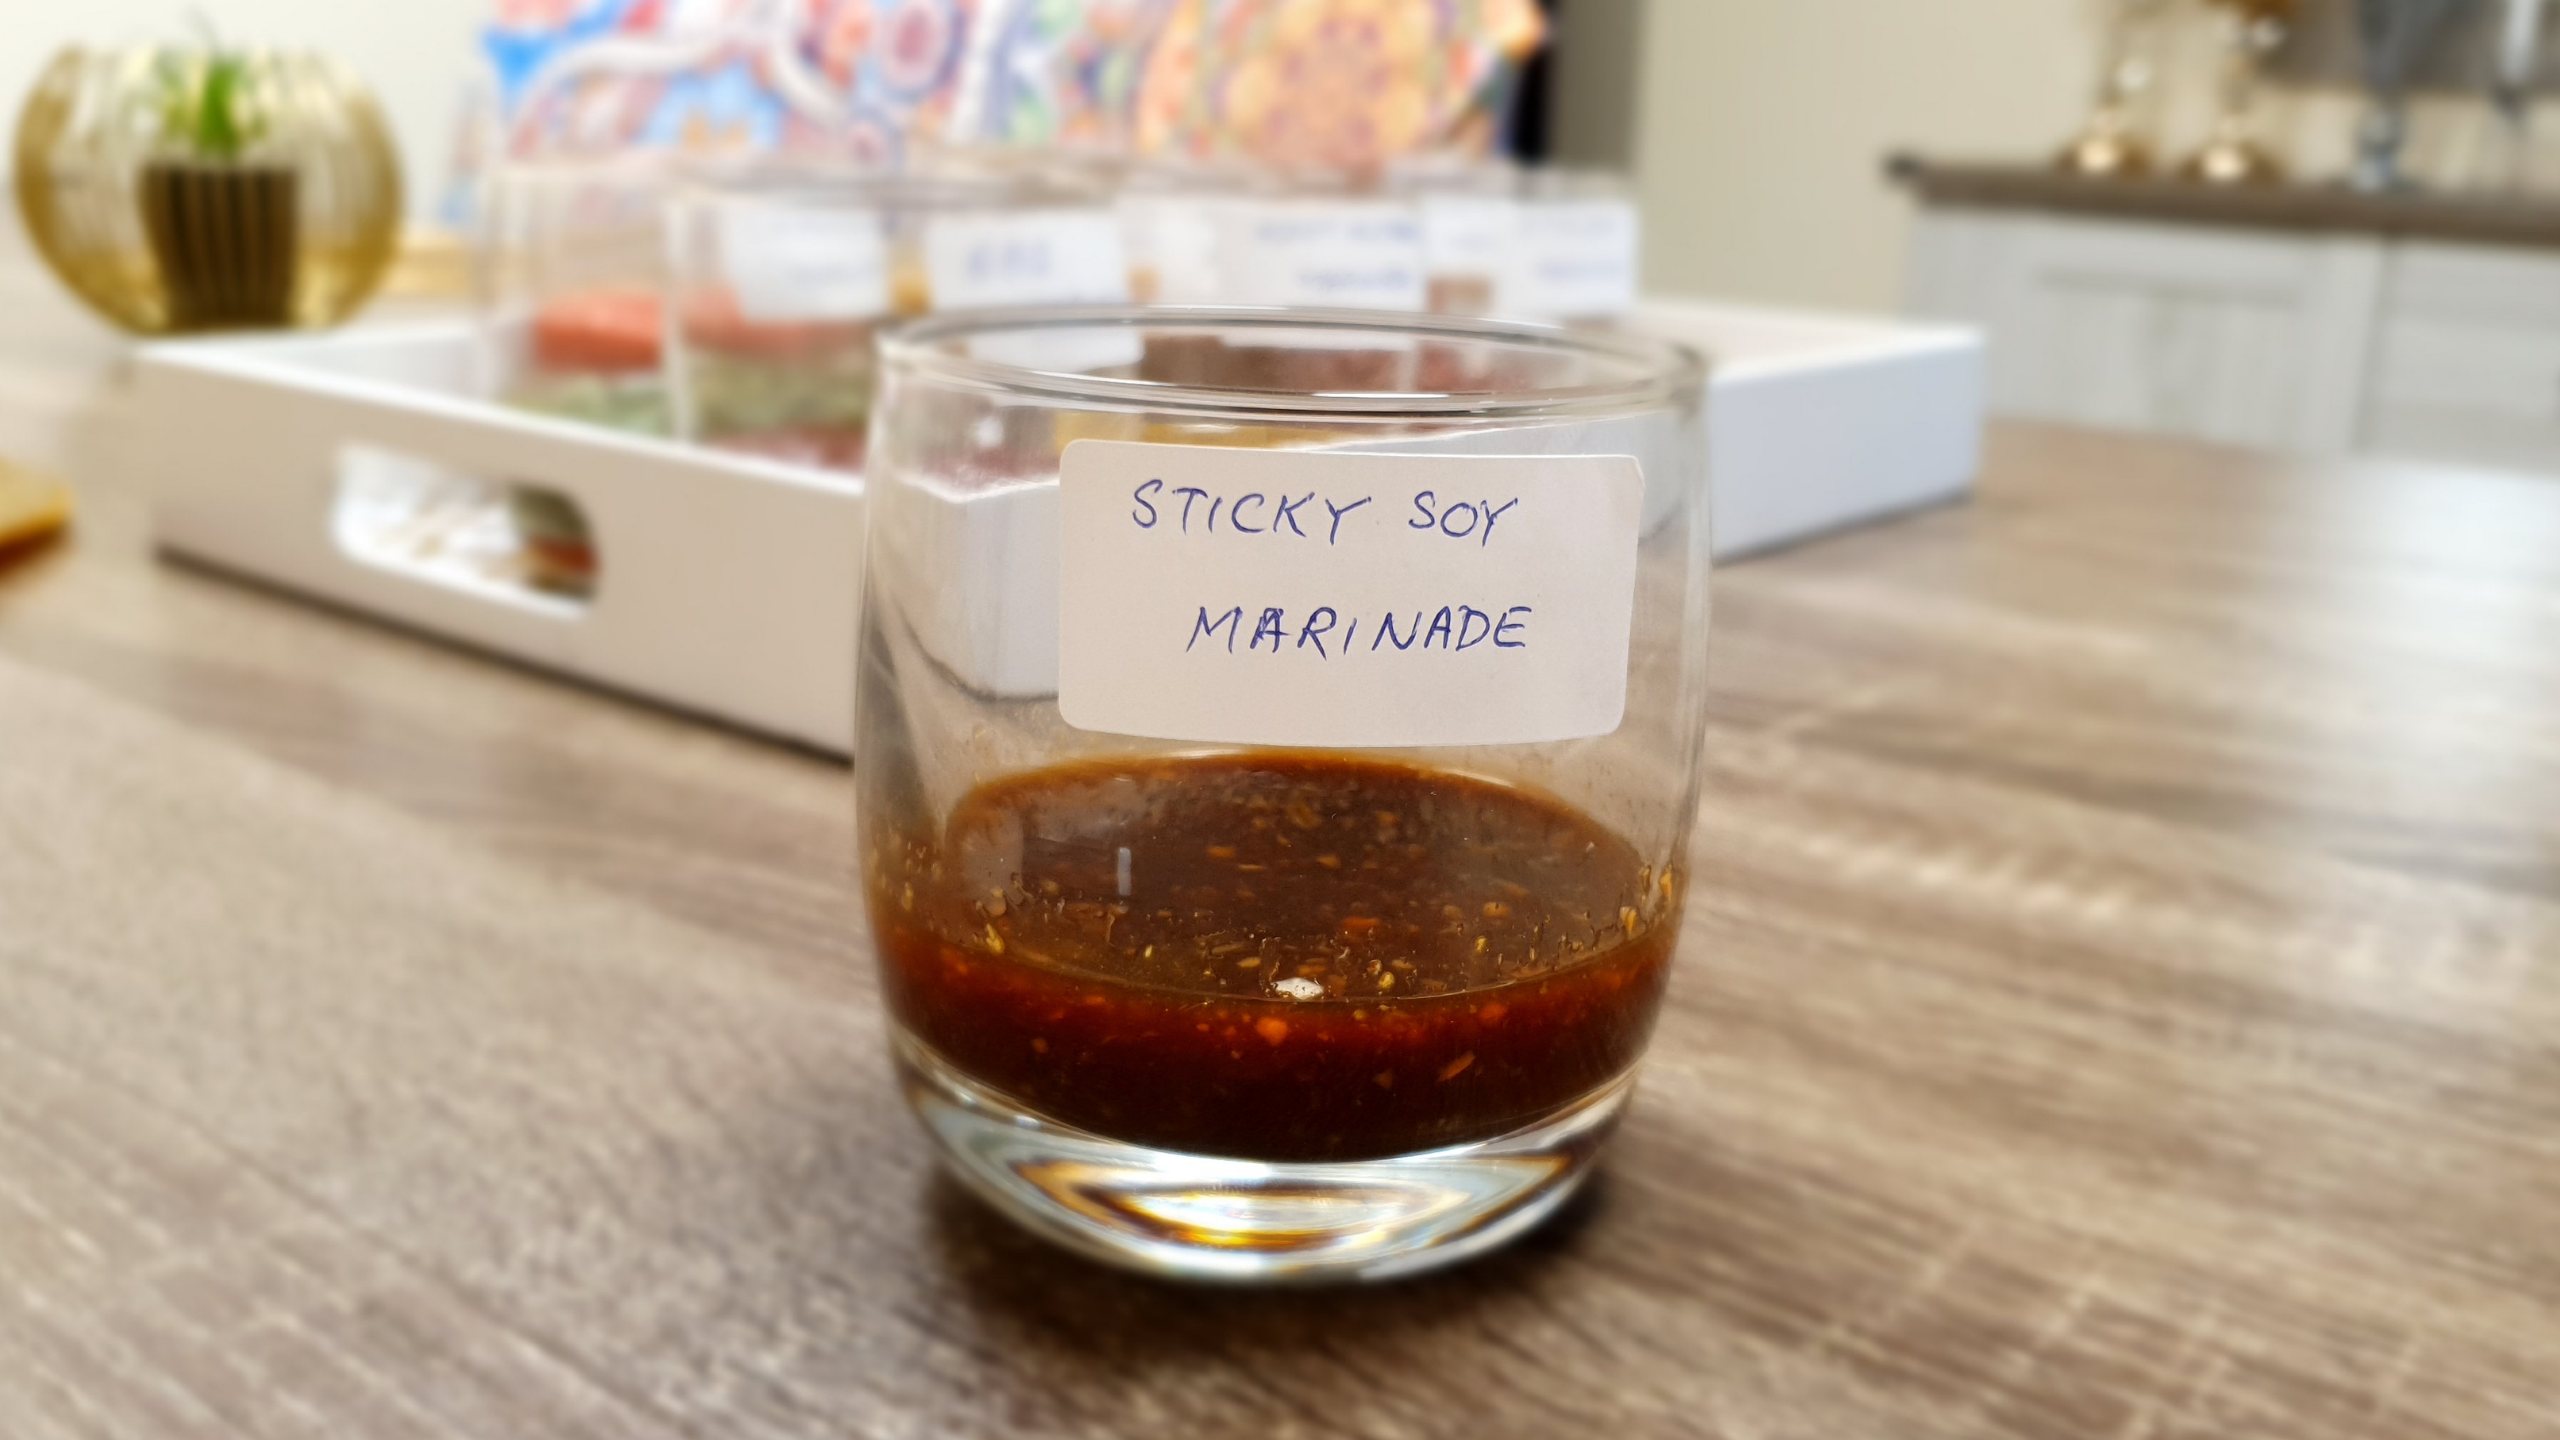 Sticky Soy Marinade